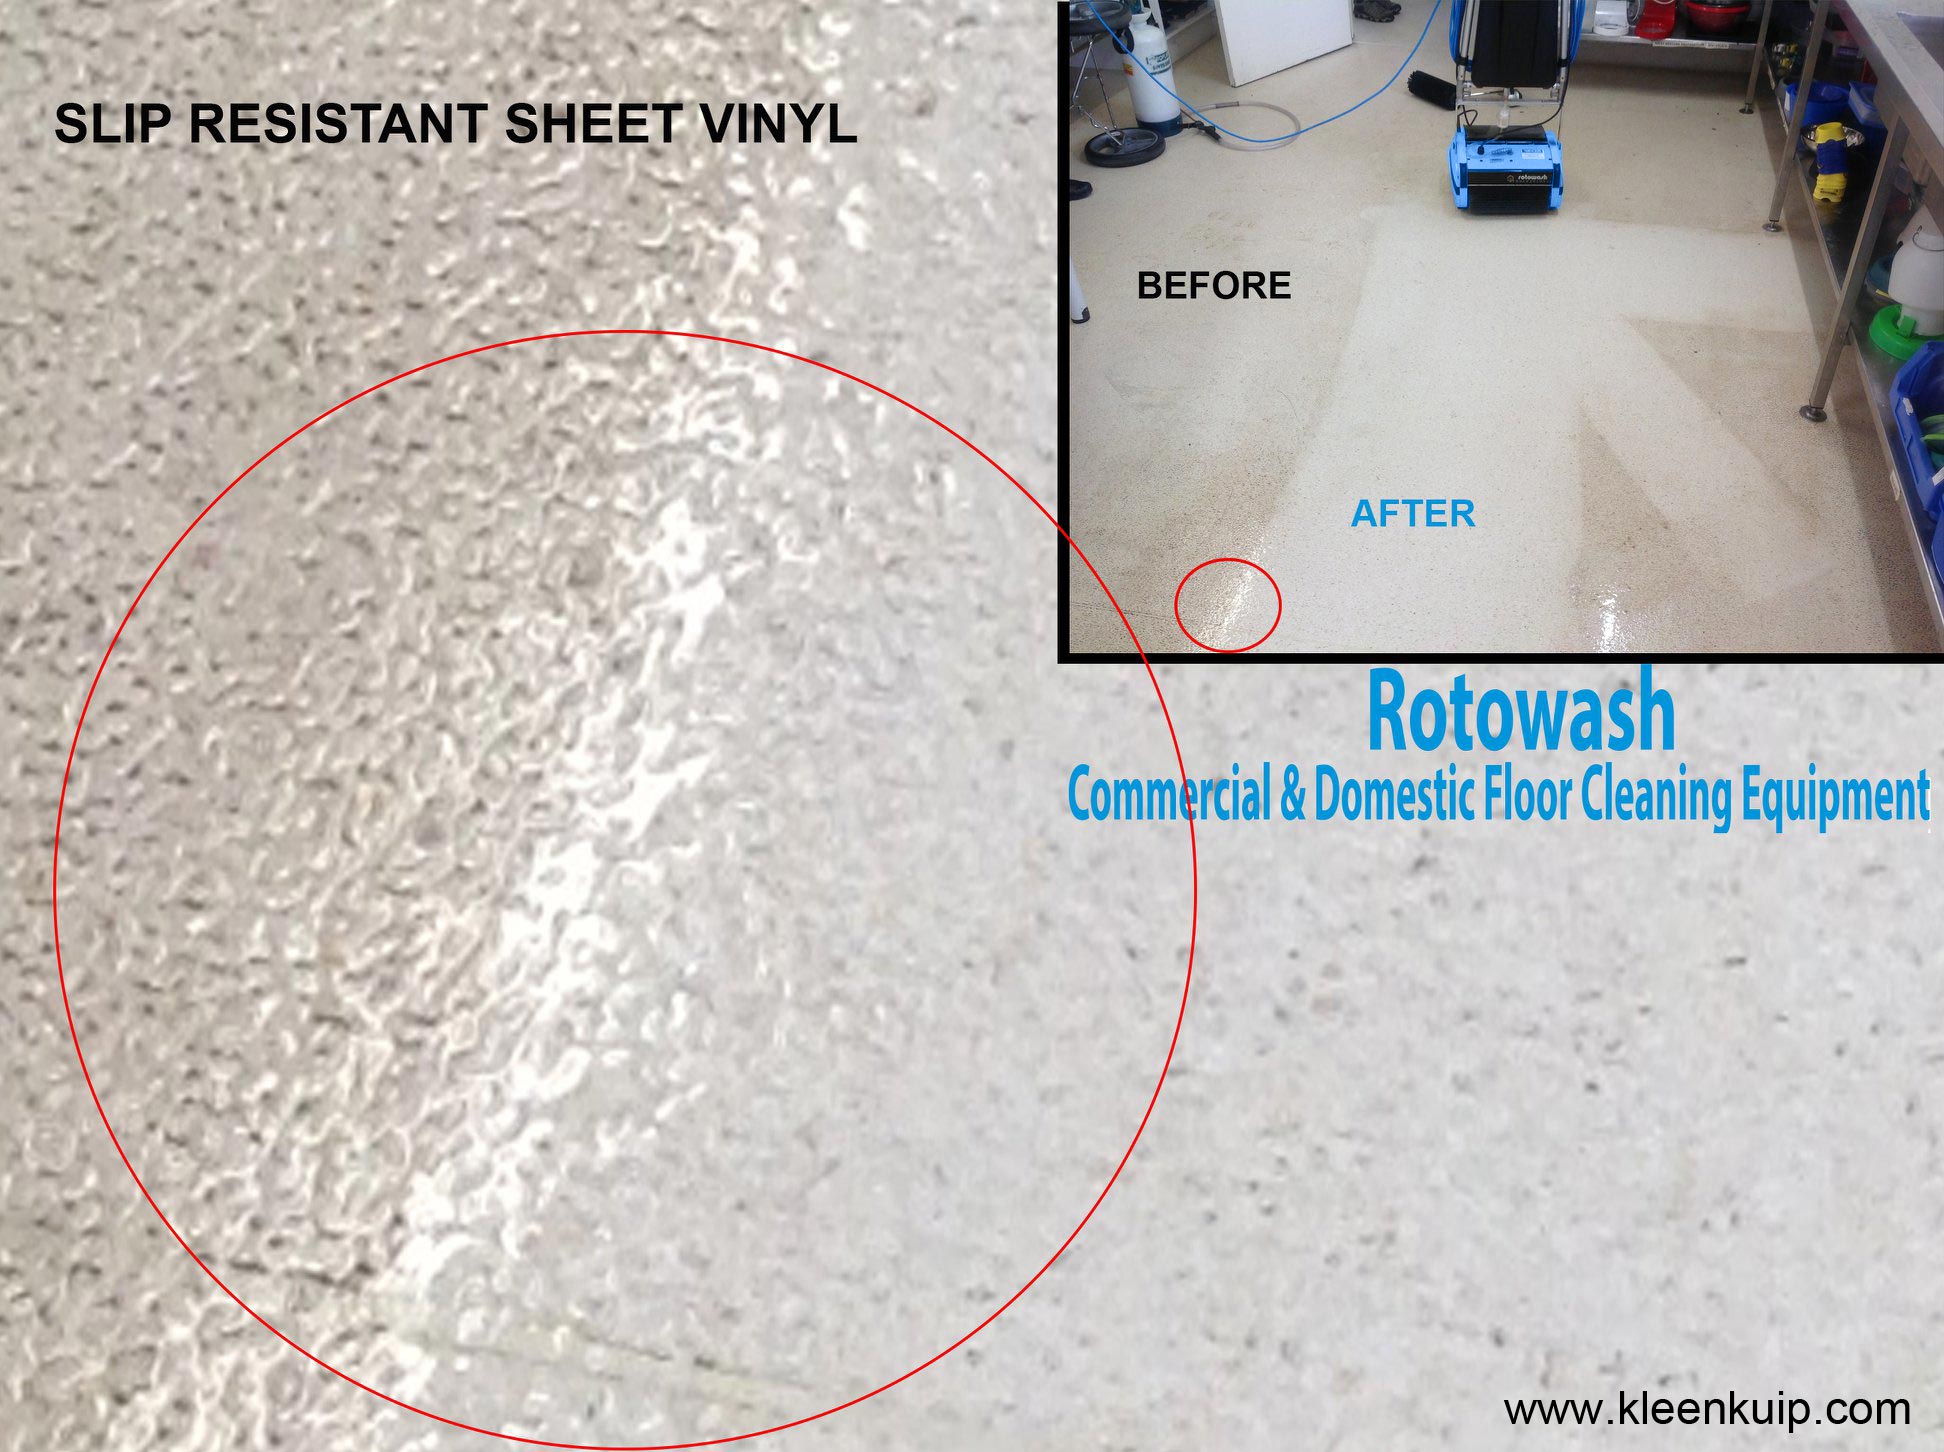 Cleaning Anti Slip Resistant Sheet Vinyl Flooring